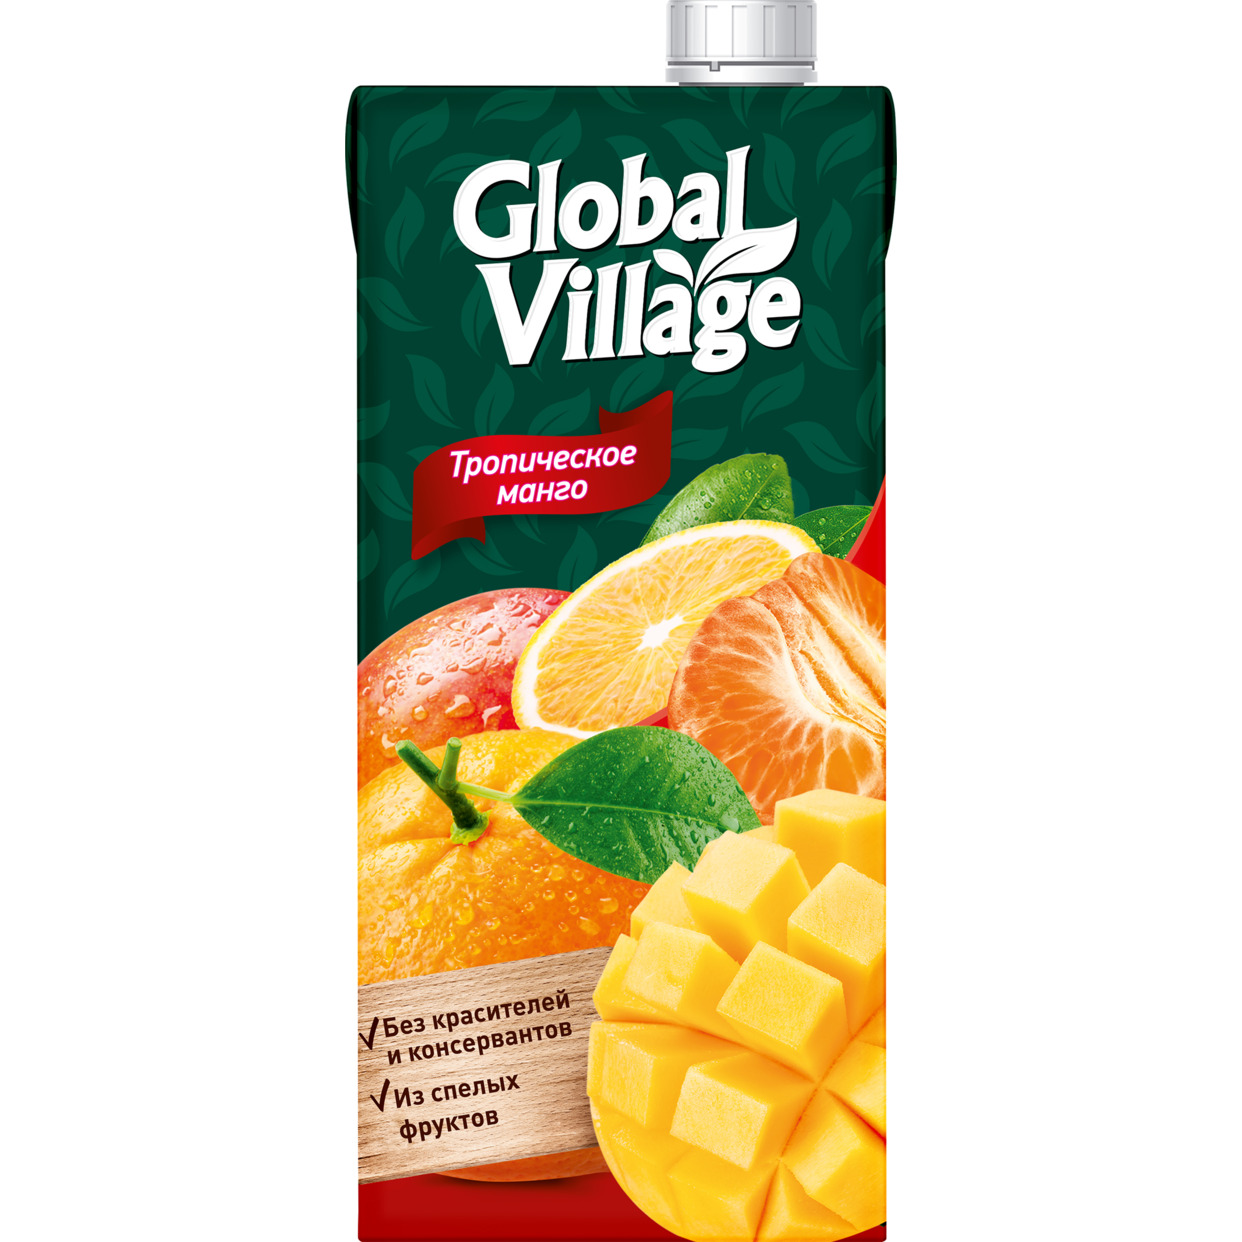 Сокосодержащий напиток из апельсинов, манго и мандаринов ТМ «Global Village» 1,93л для детей дошкольного и школьного возраста (от 3 лет) по акции в Пятерочке